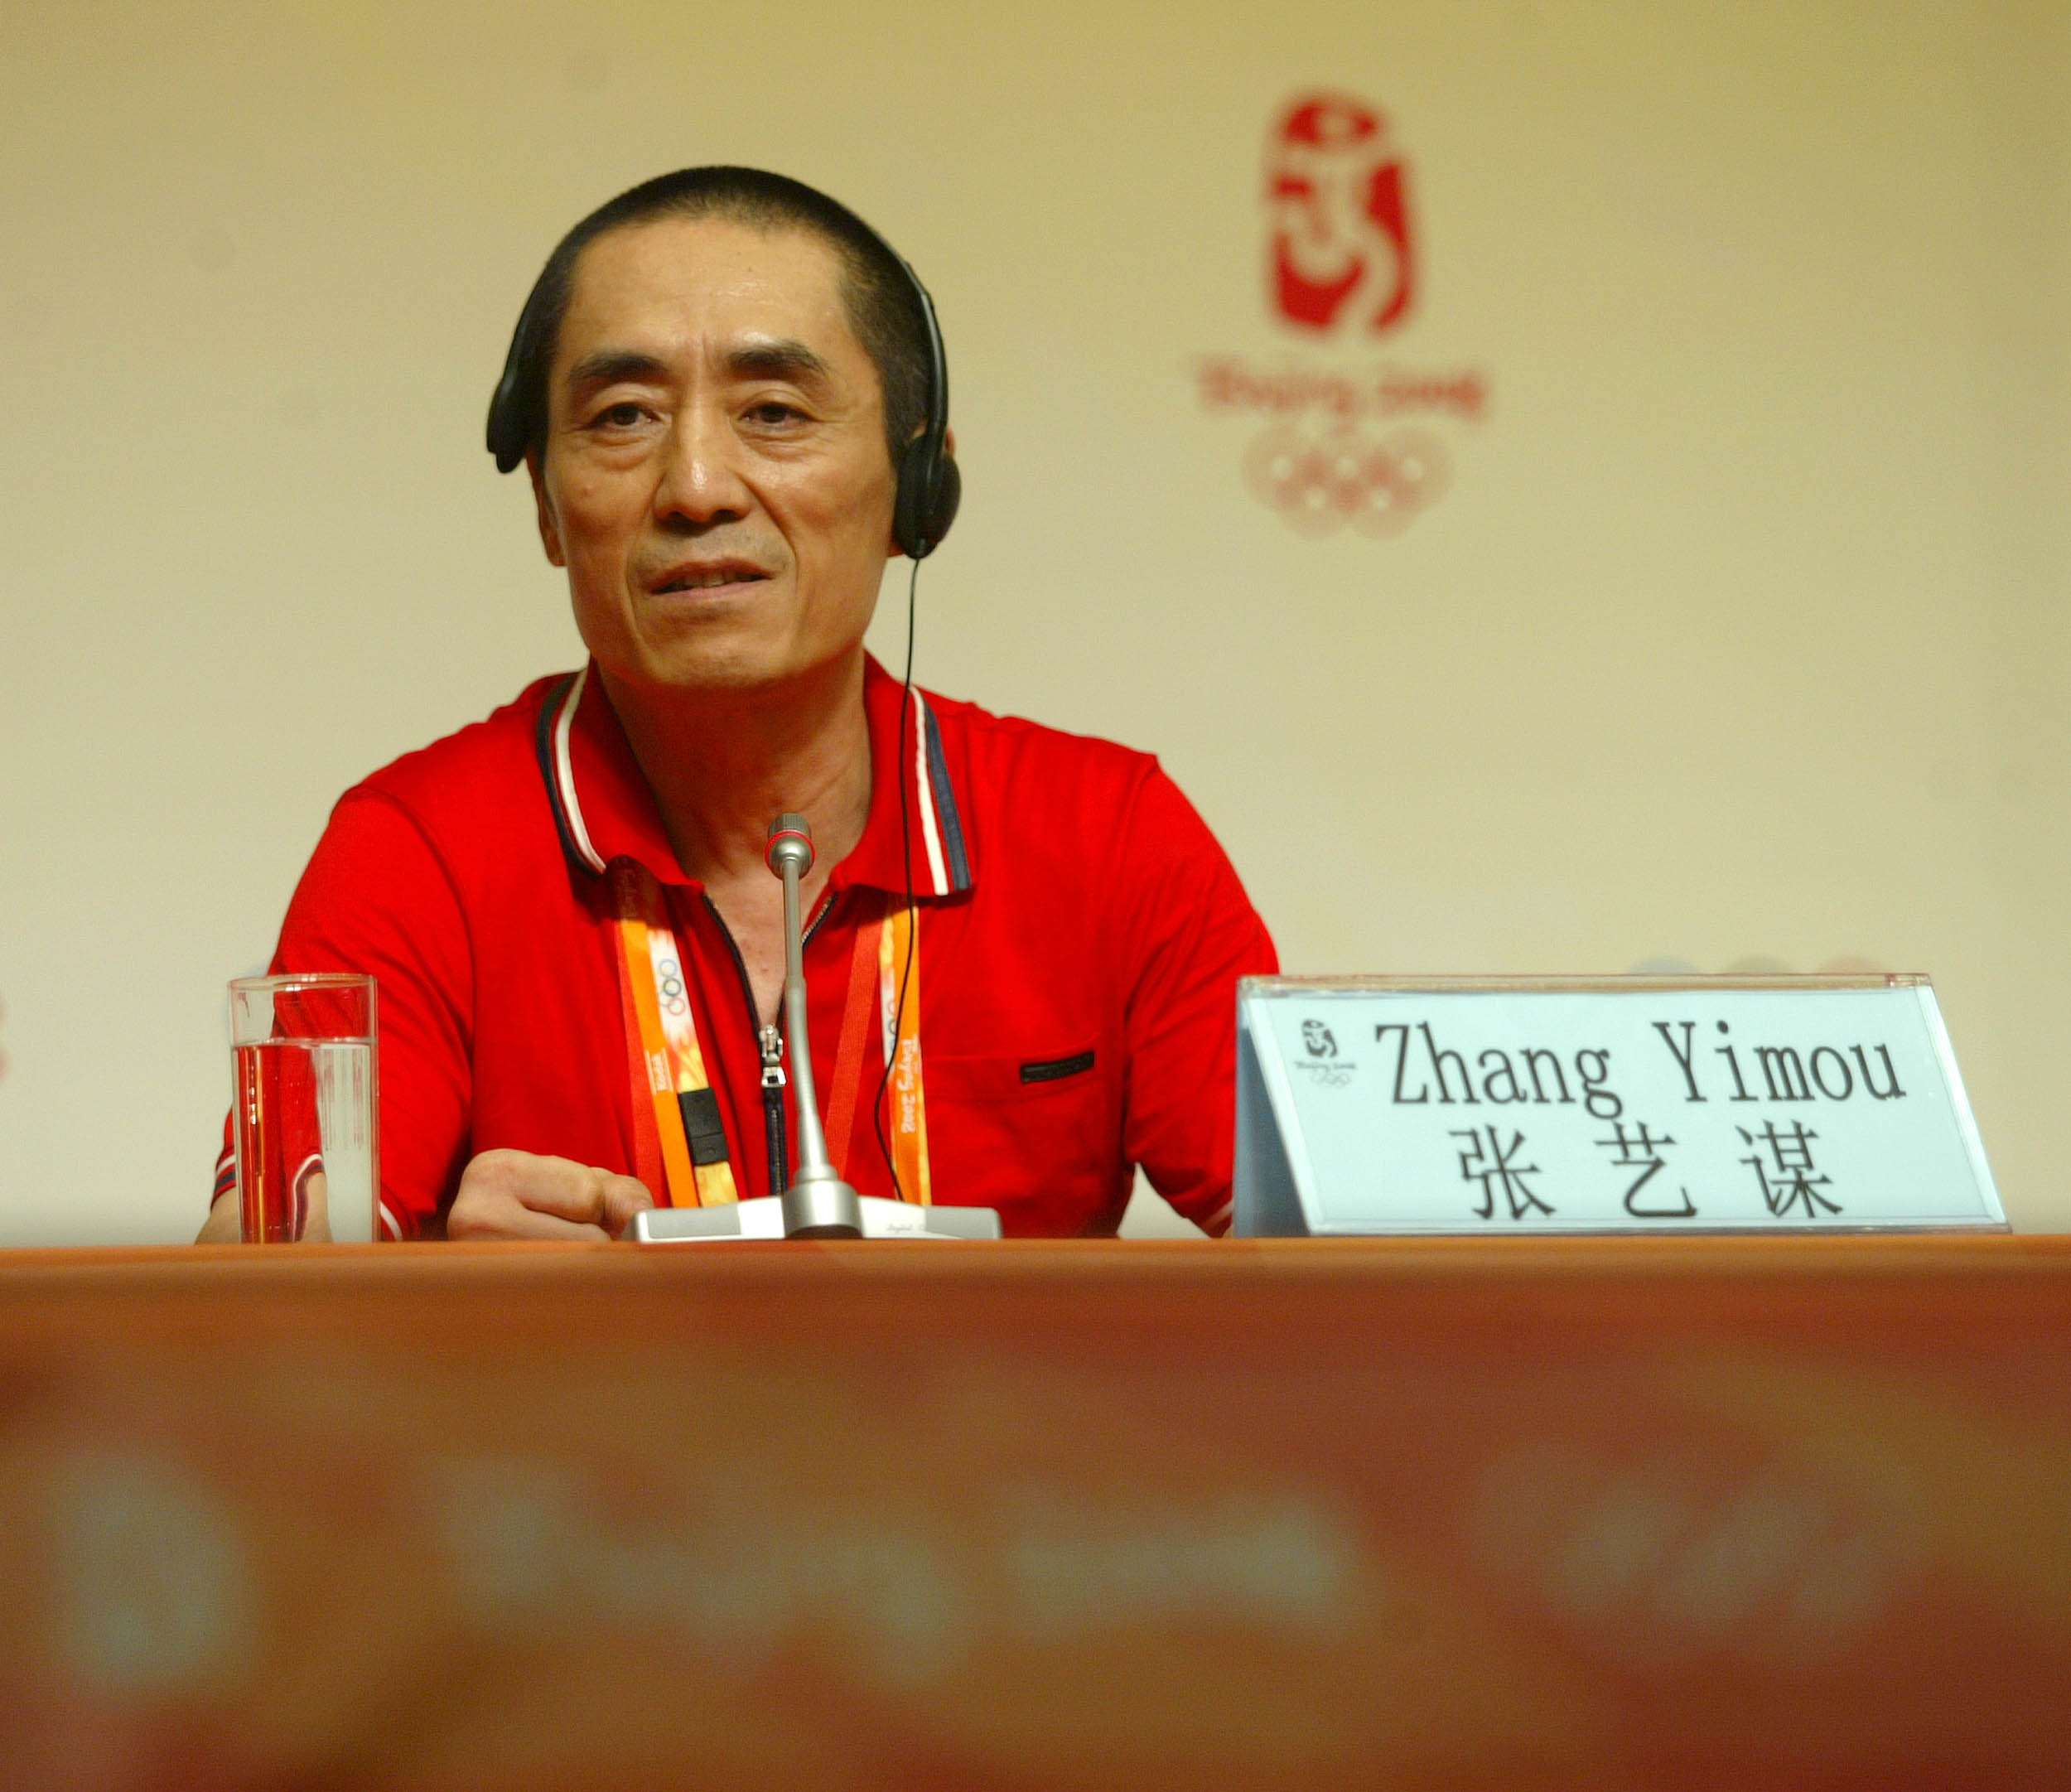 张艺谋担任2008年北京奥运会开闭幕式总导演。